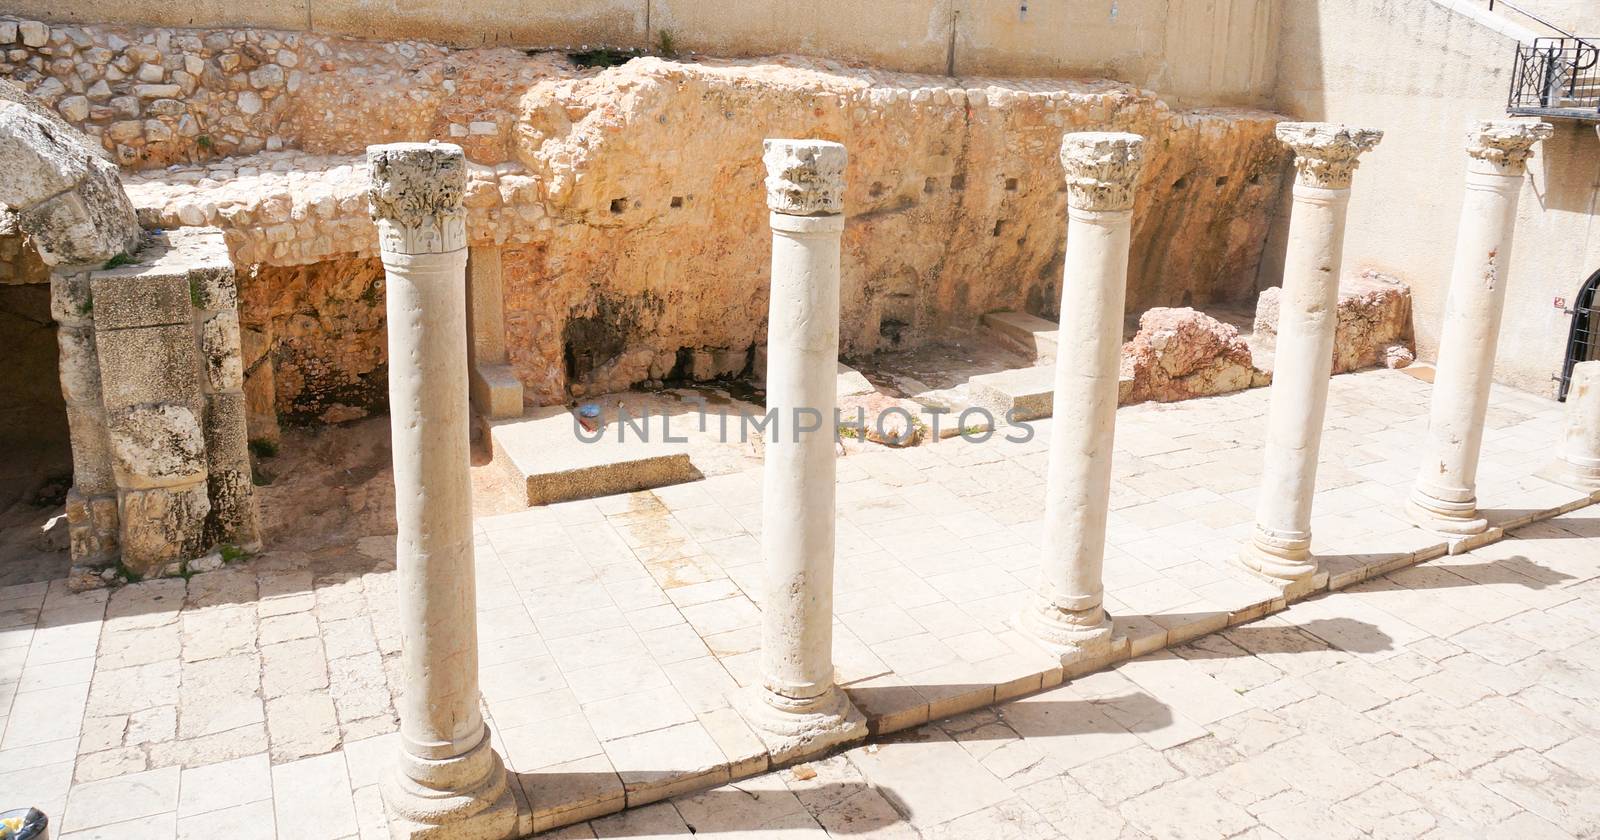 Ruins in jerusalem by javax